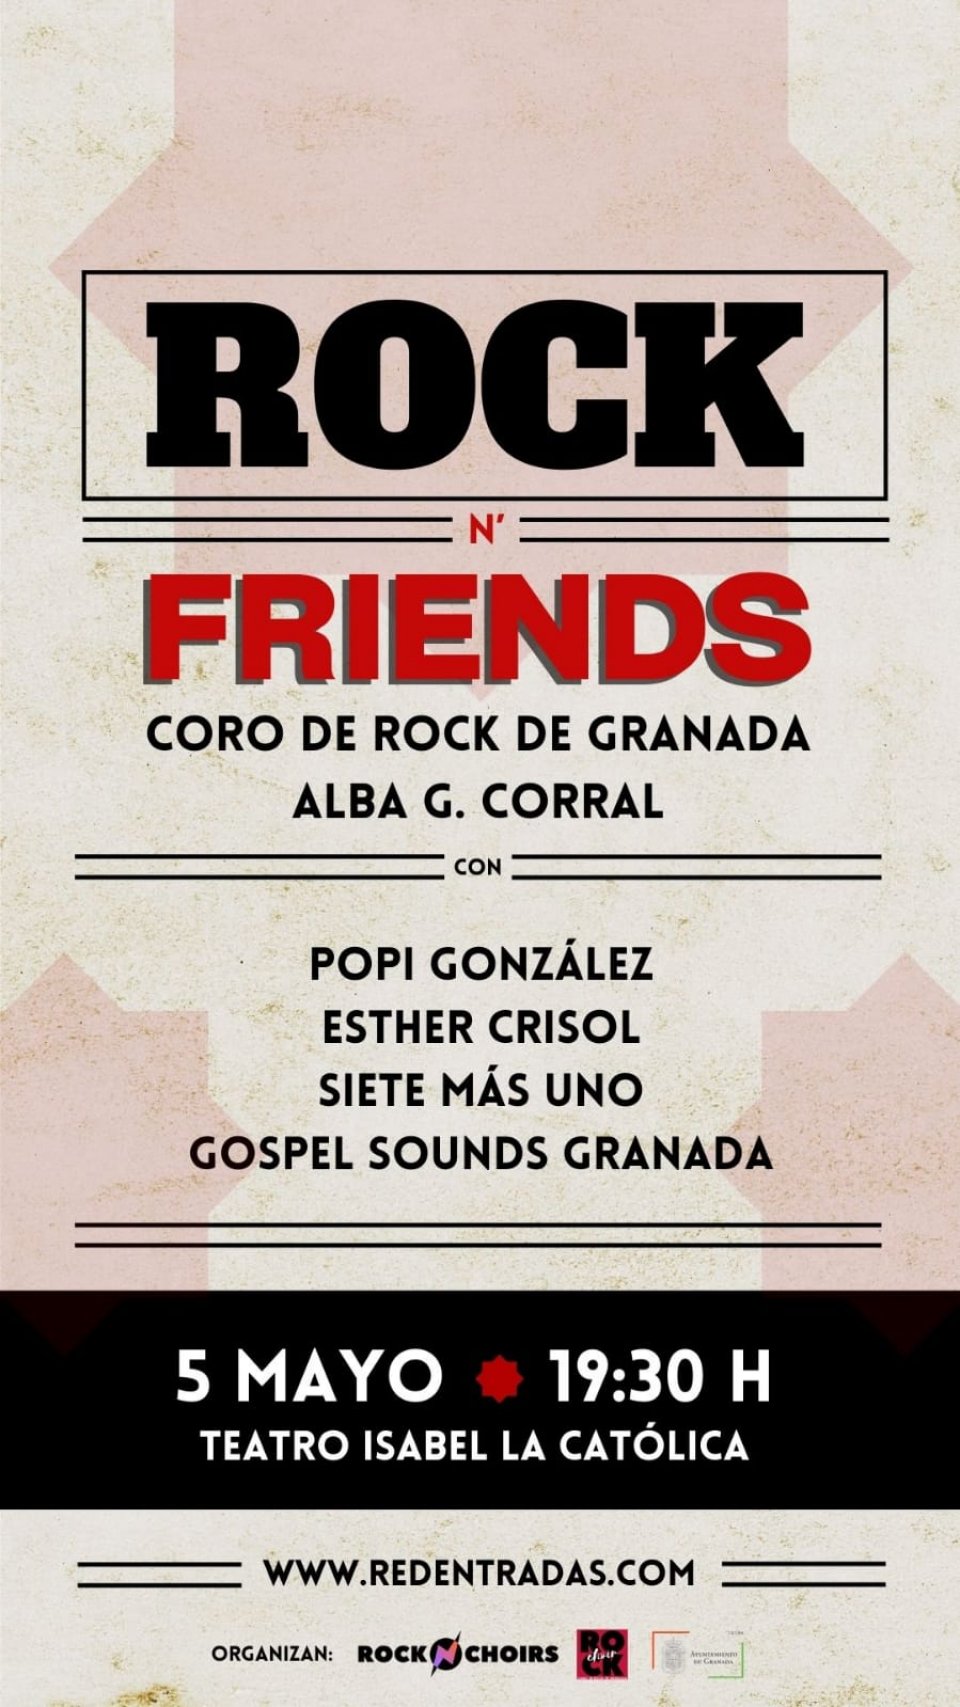 Coro de Rock de Granada